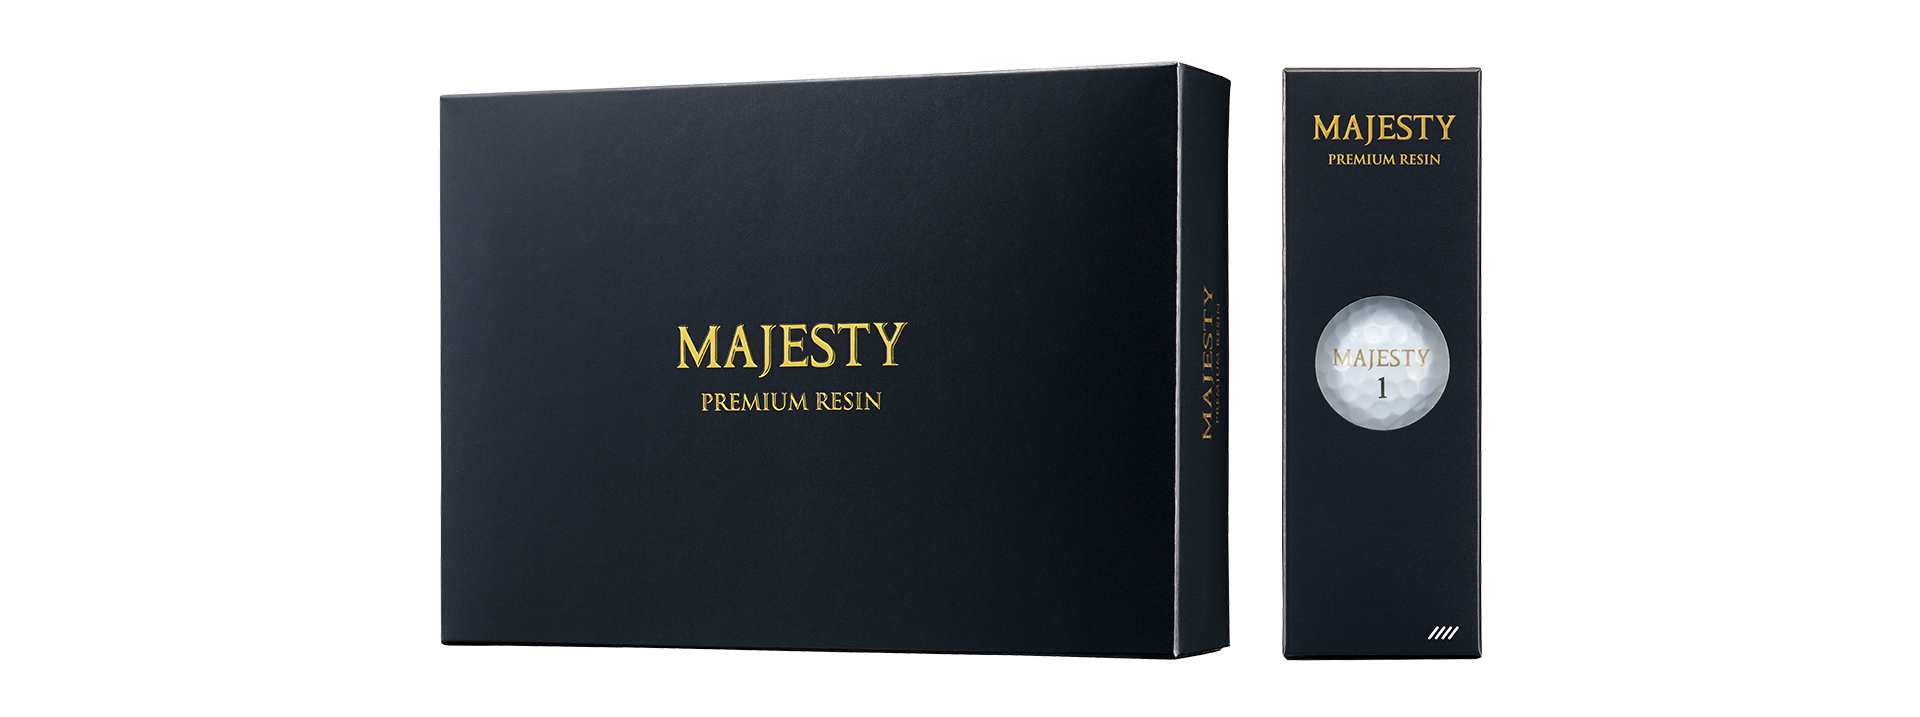 MAJESTY PREMIUM RESIN | Majesty